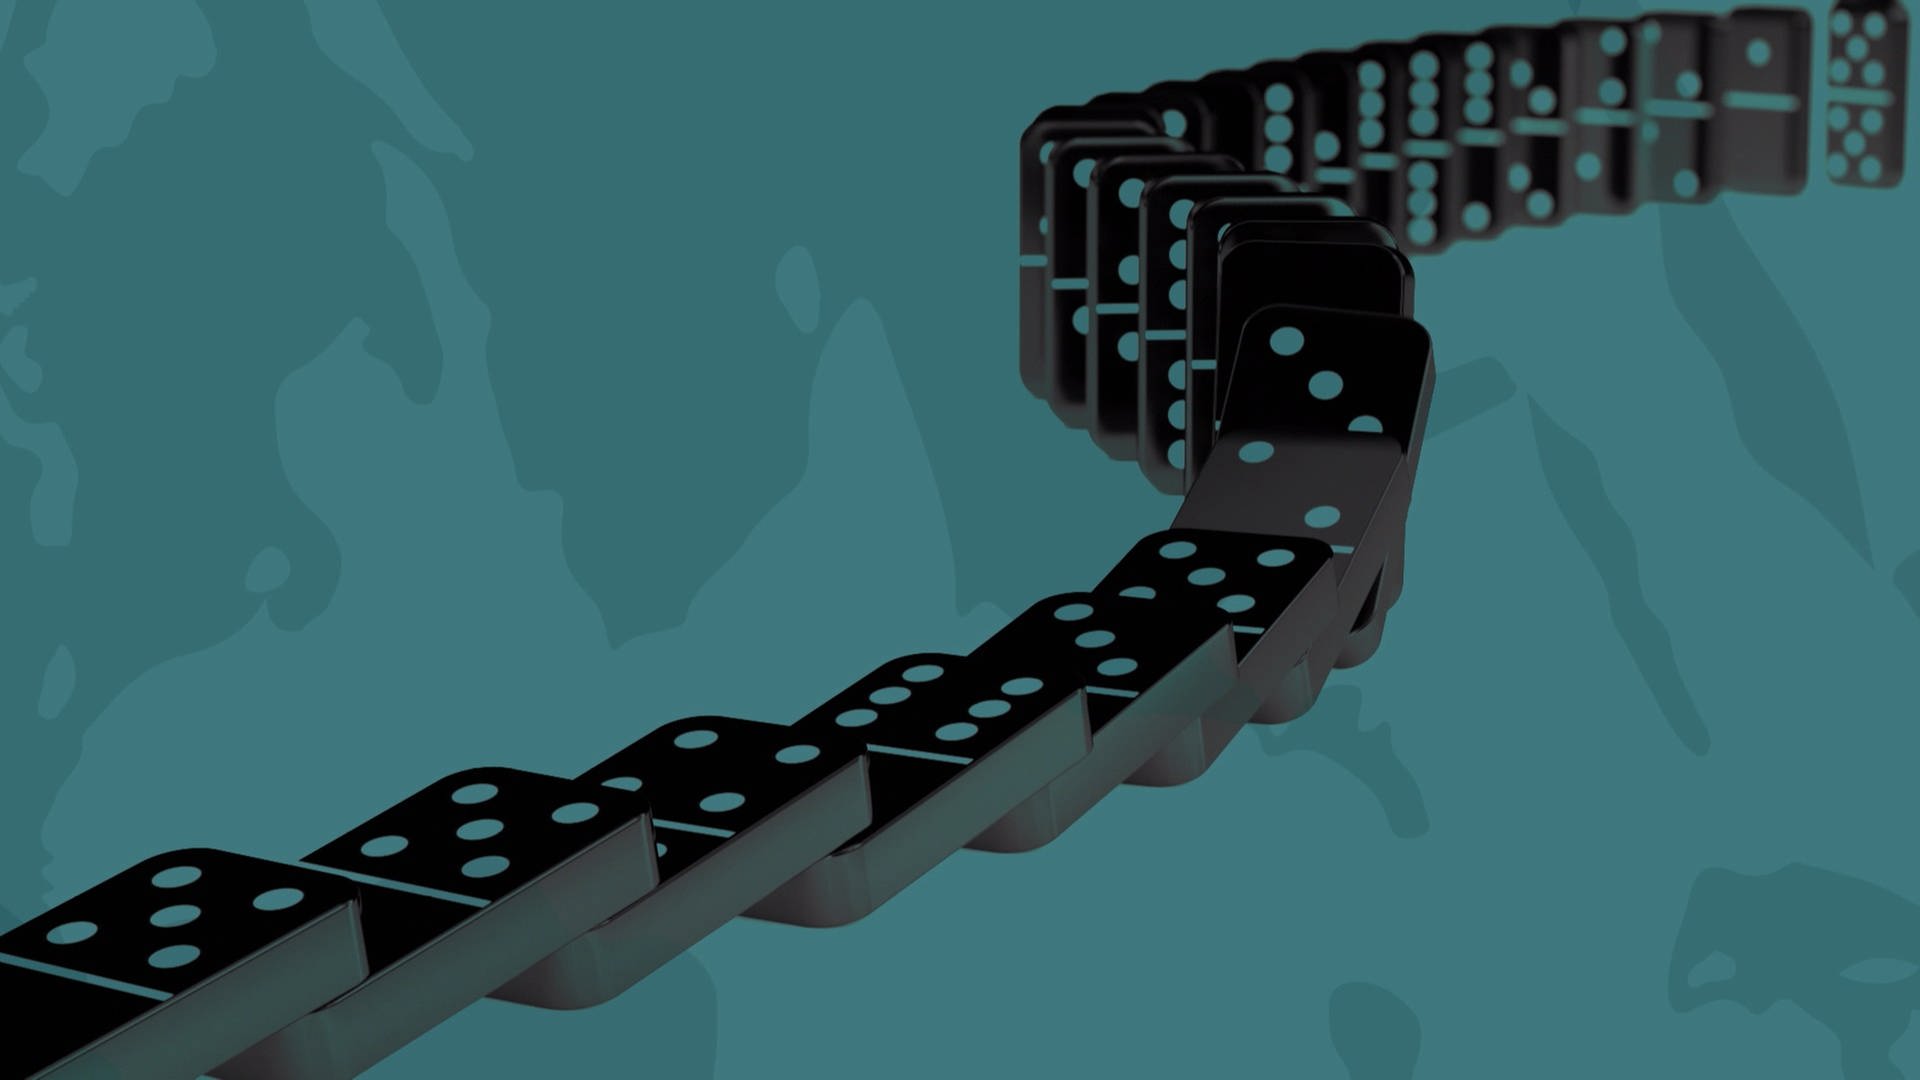 Eine Animation von umfallenden Dominosteinen vor einem türkisen Hintergrund.